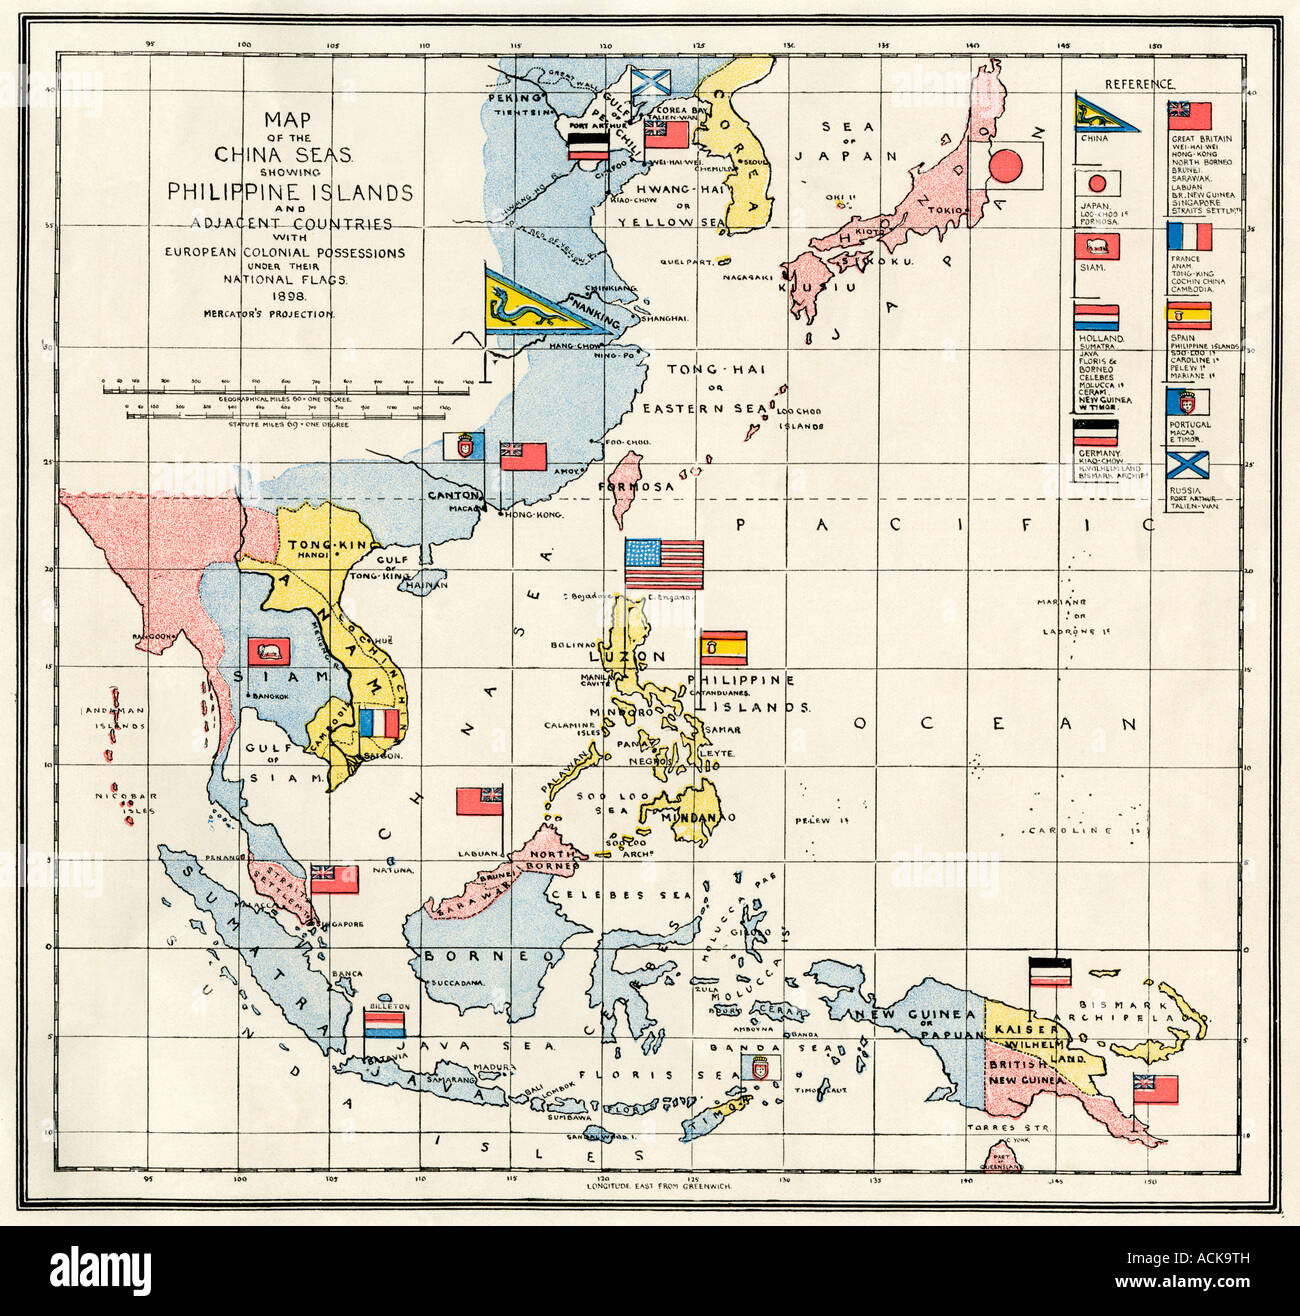 Carte de la mer de Chine, les Philippines, et colonies européennes dans la région Asie du Sud-Est 1898. Lithographie couleur Banque D'Images